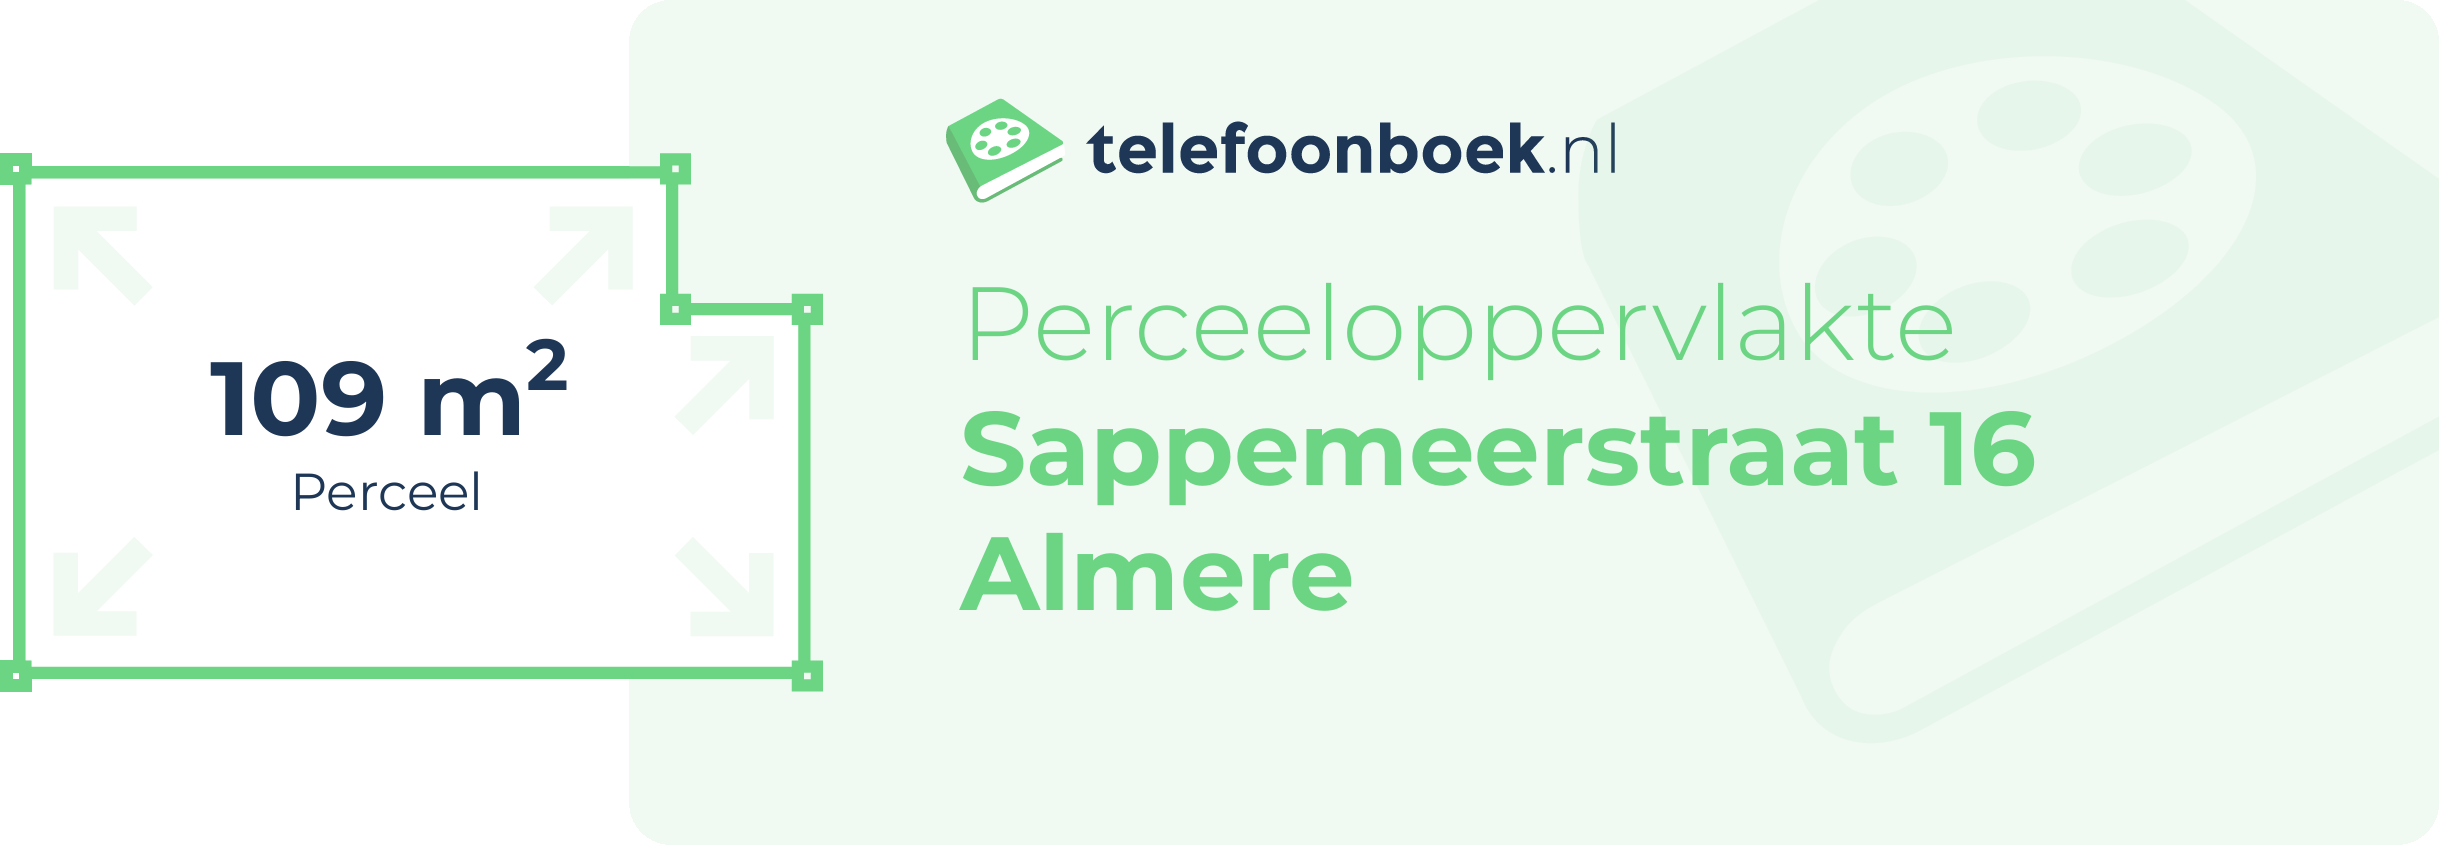 Perceeloppervlakte Sappemeerstraat 16 Almere